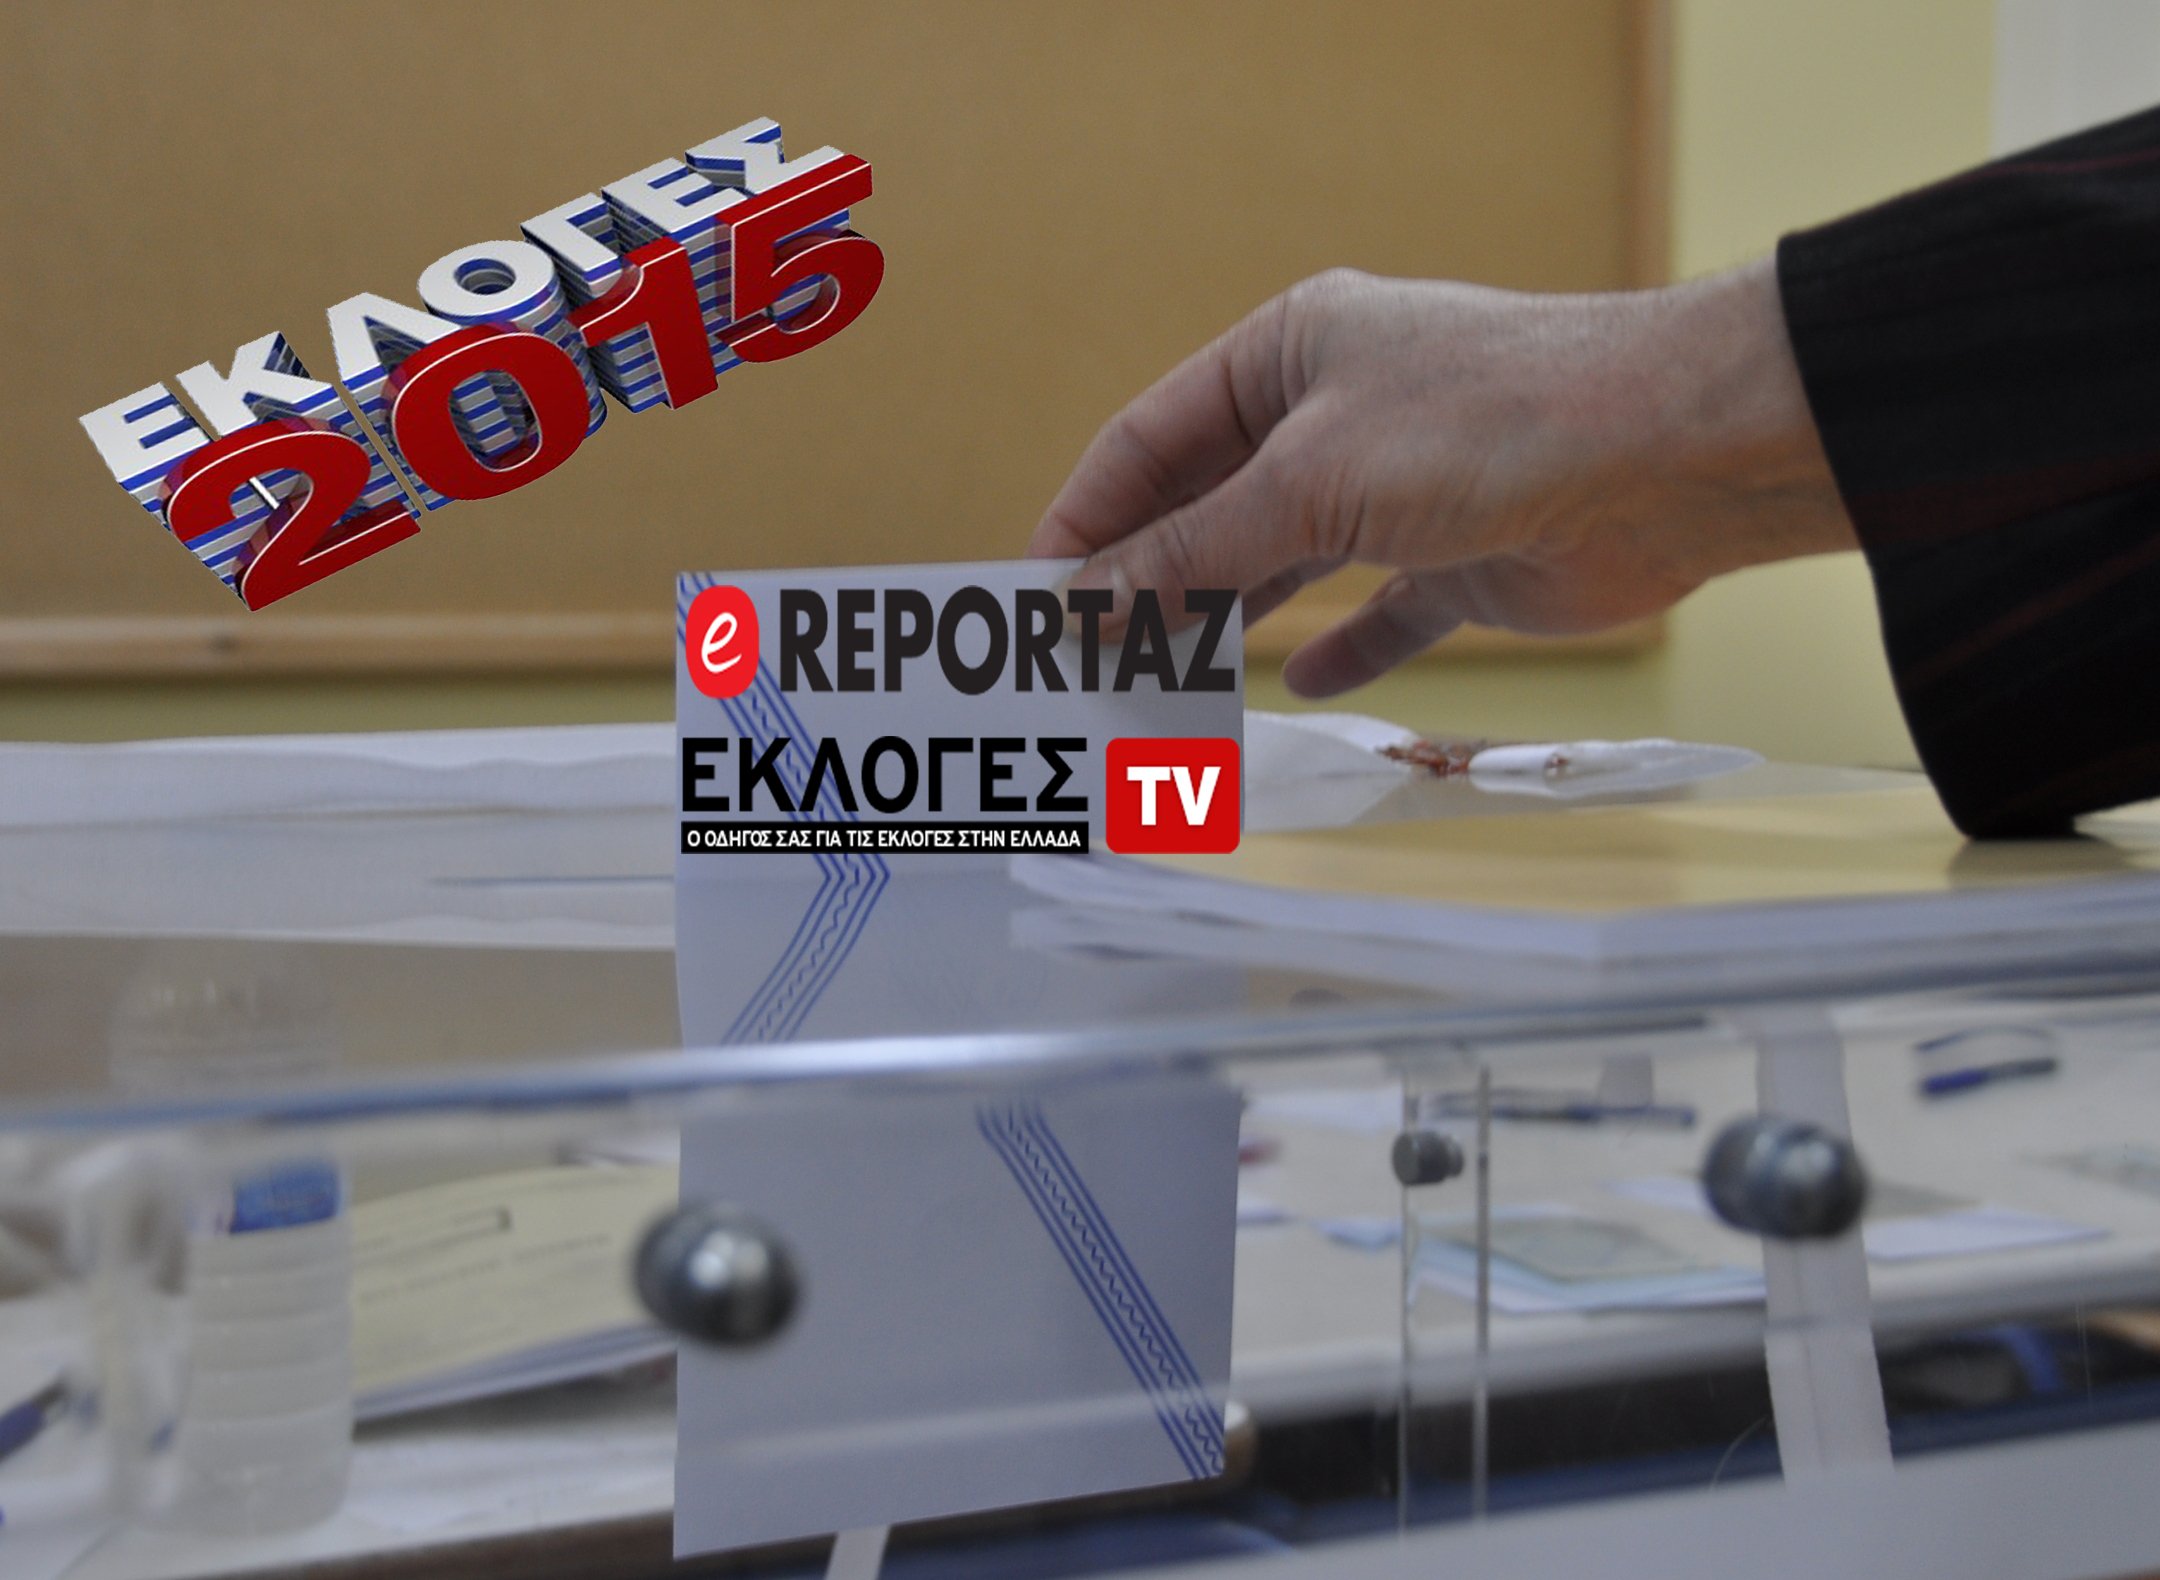 Βουλευτικές εκλογές 2015: Το ereportaz και το ekloges.tv στην πιο κρίσιμη εκλογική αναμέτρηση